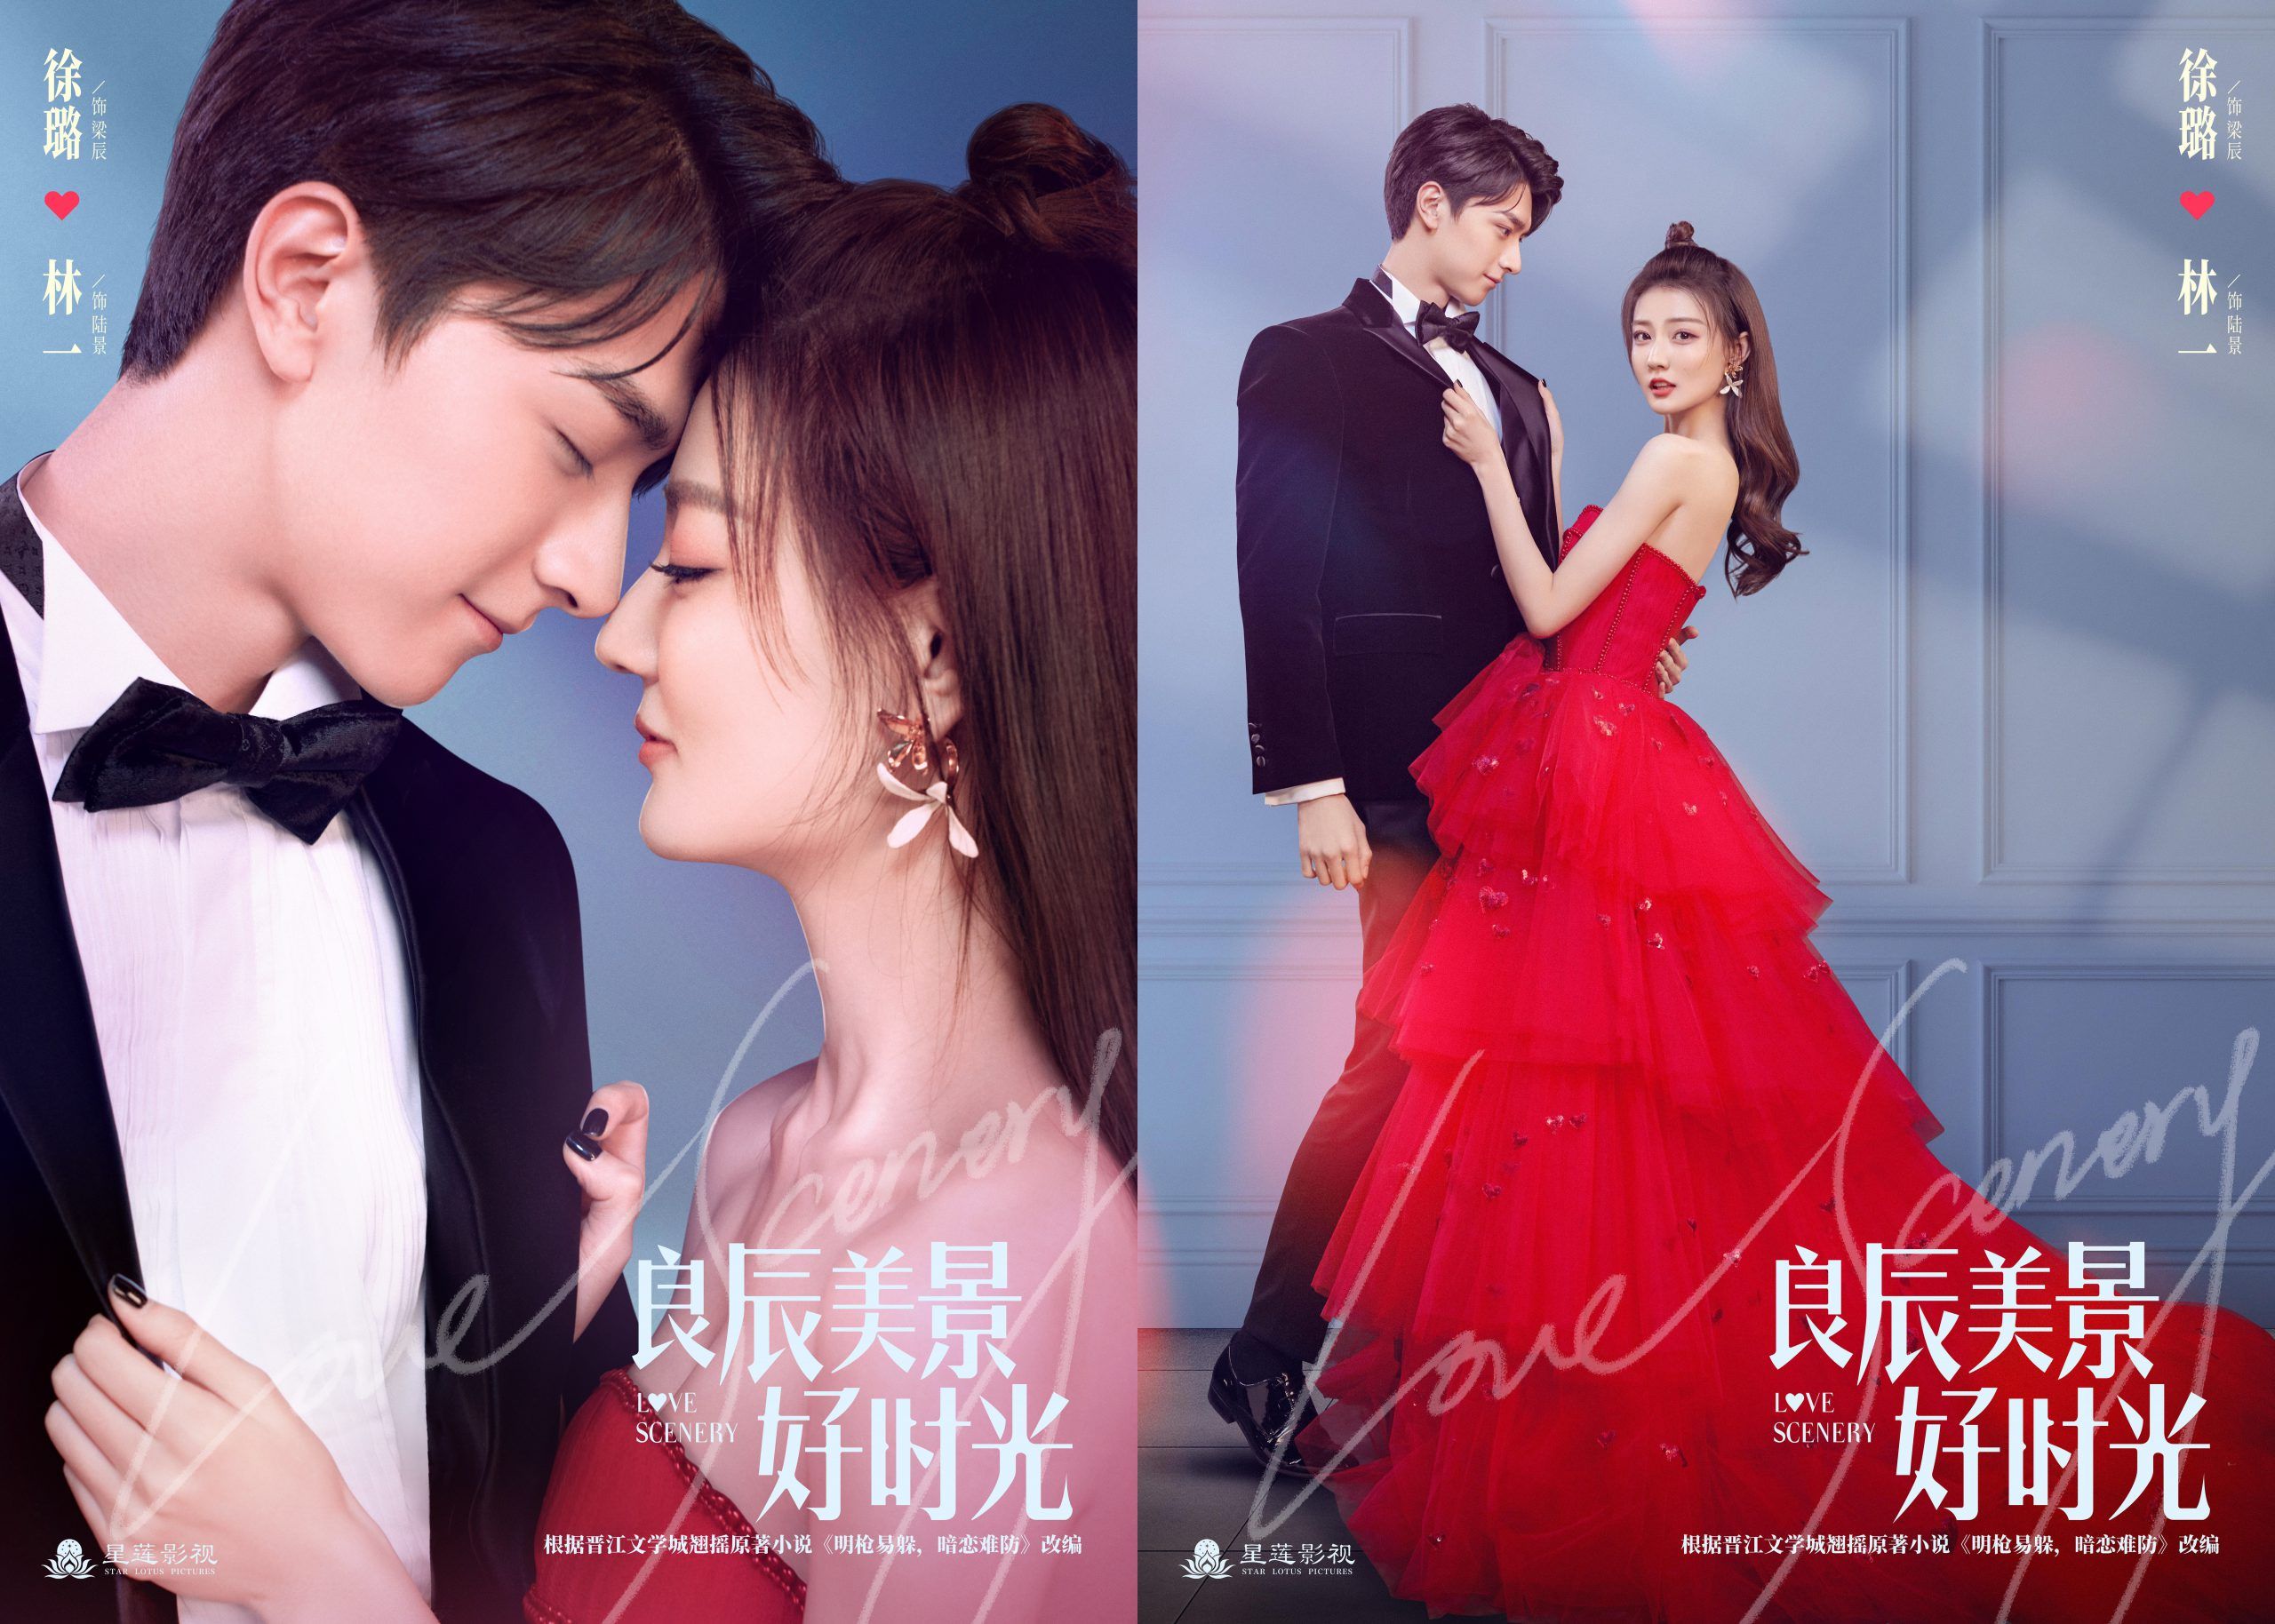 Lin Yi And Xu Lu's Romance Drama “Love Scenery” Drops New Teaser